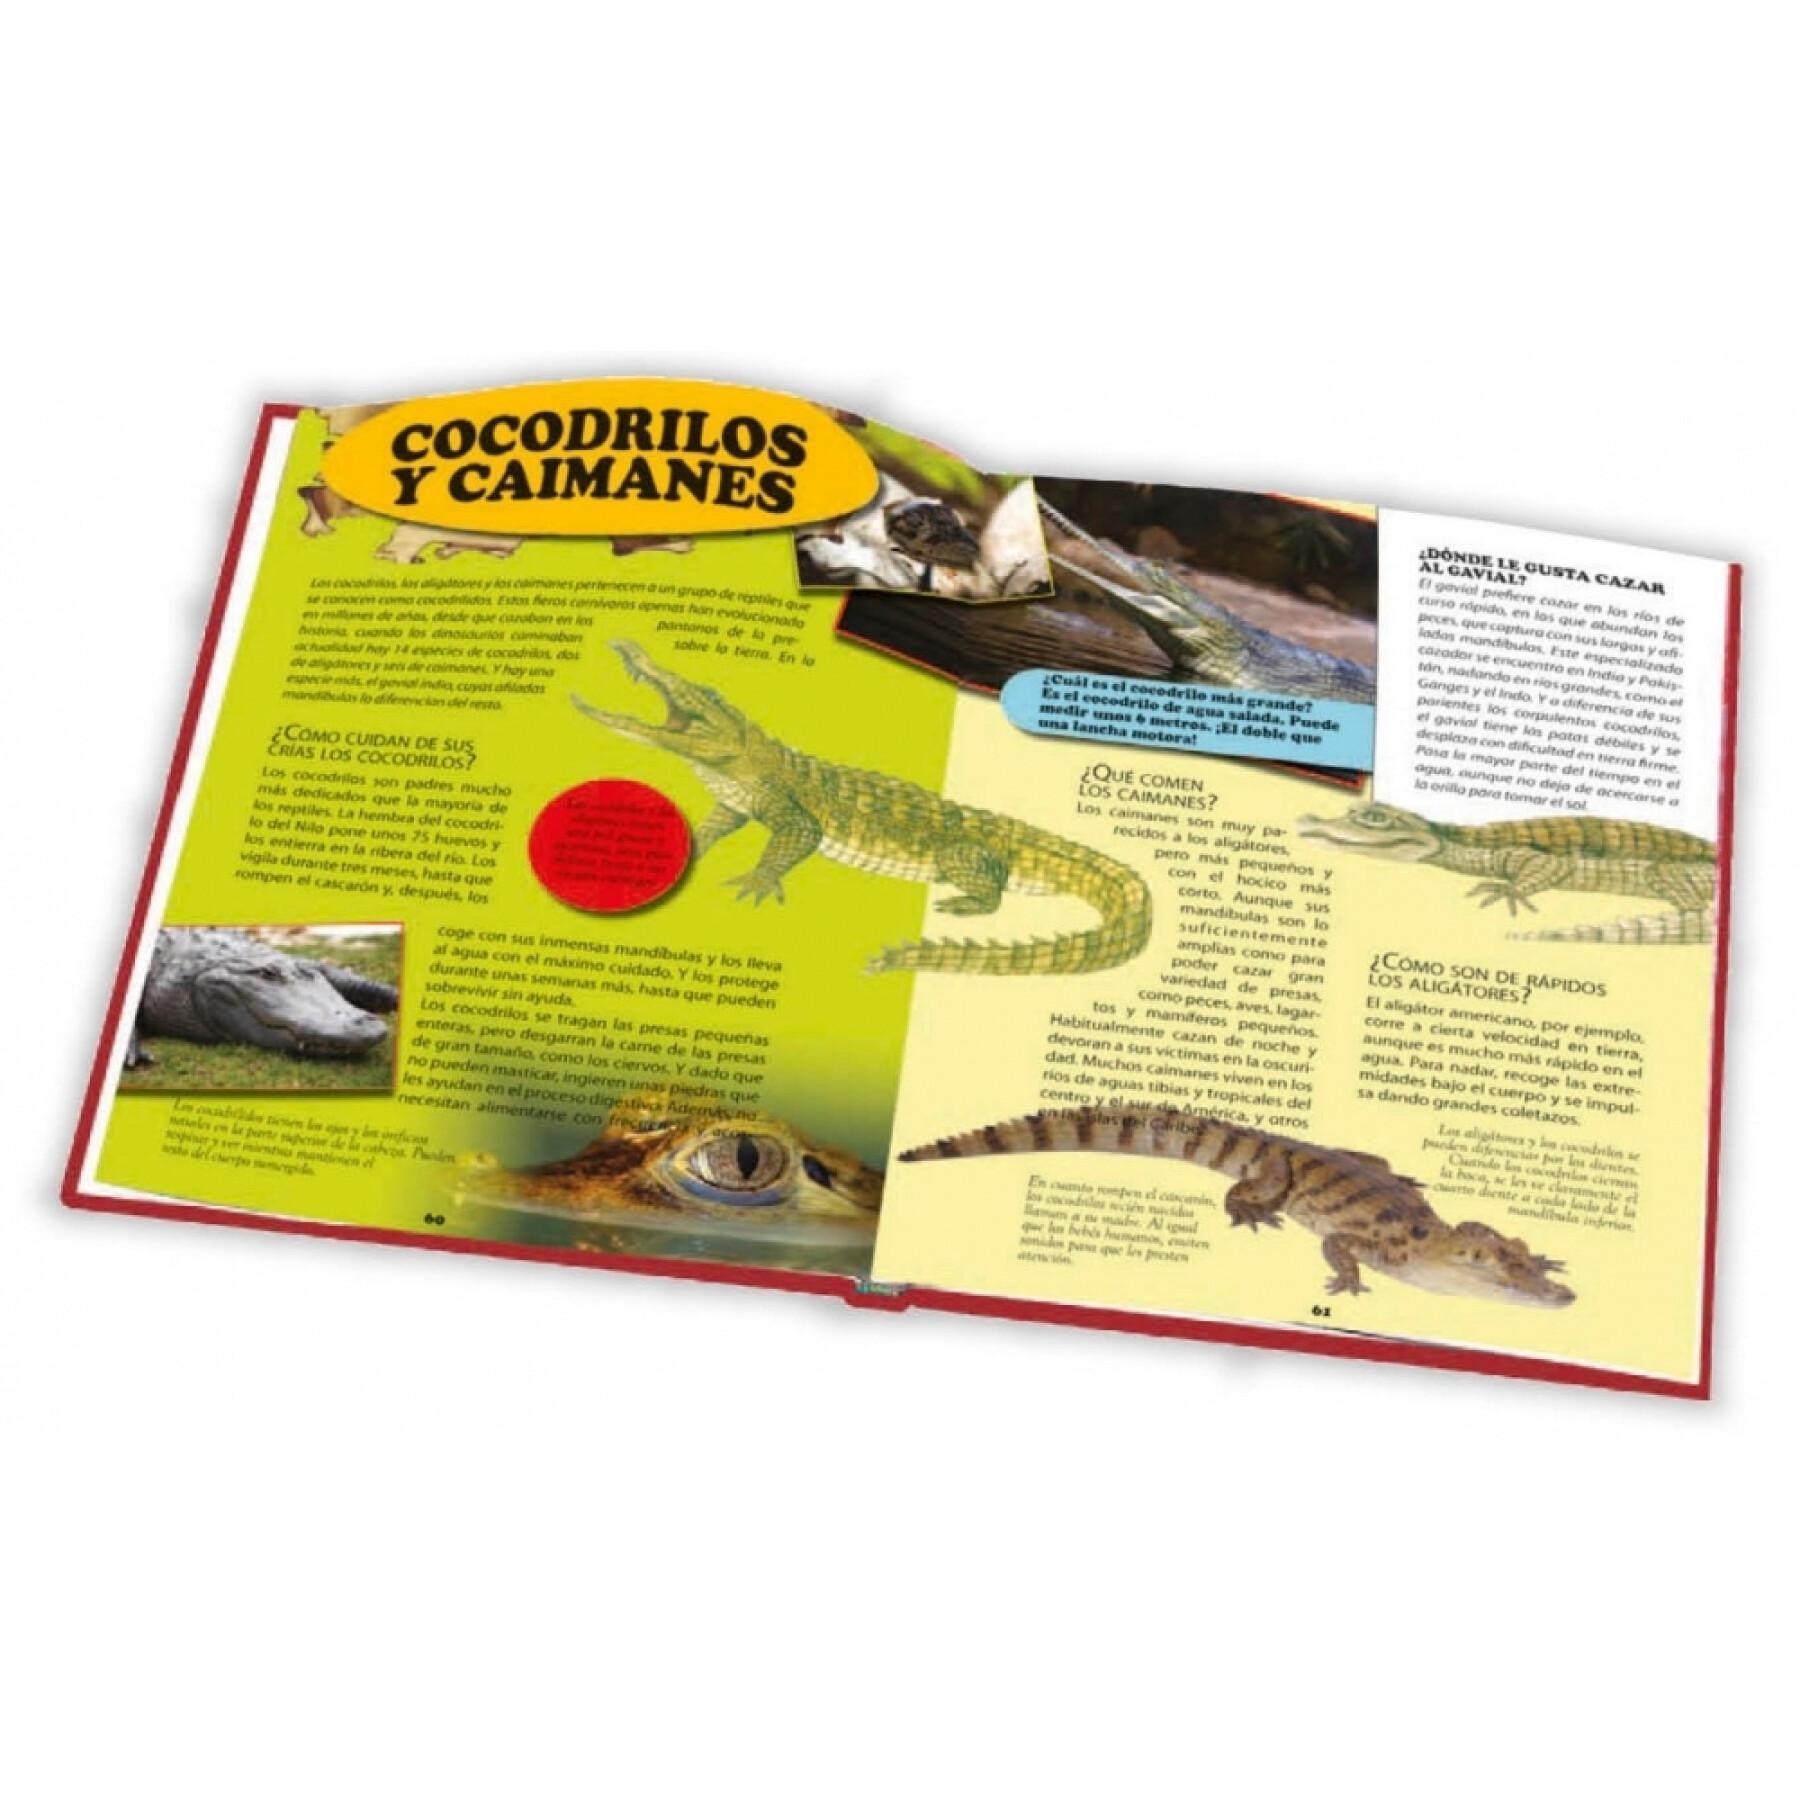 Book 28 pages encyclopedia of animals Ediciones Saldaña